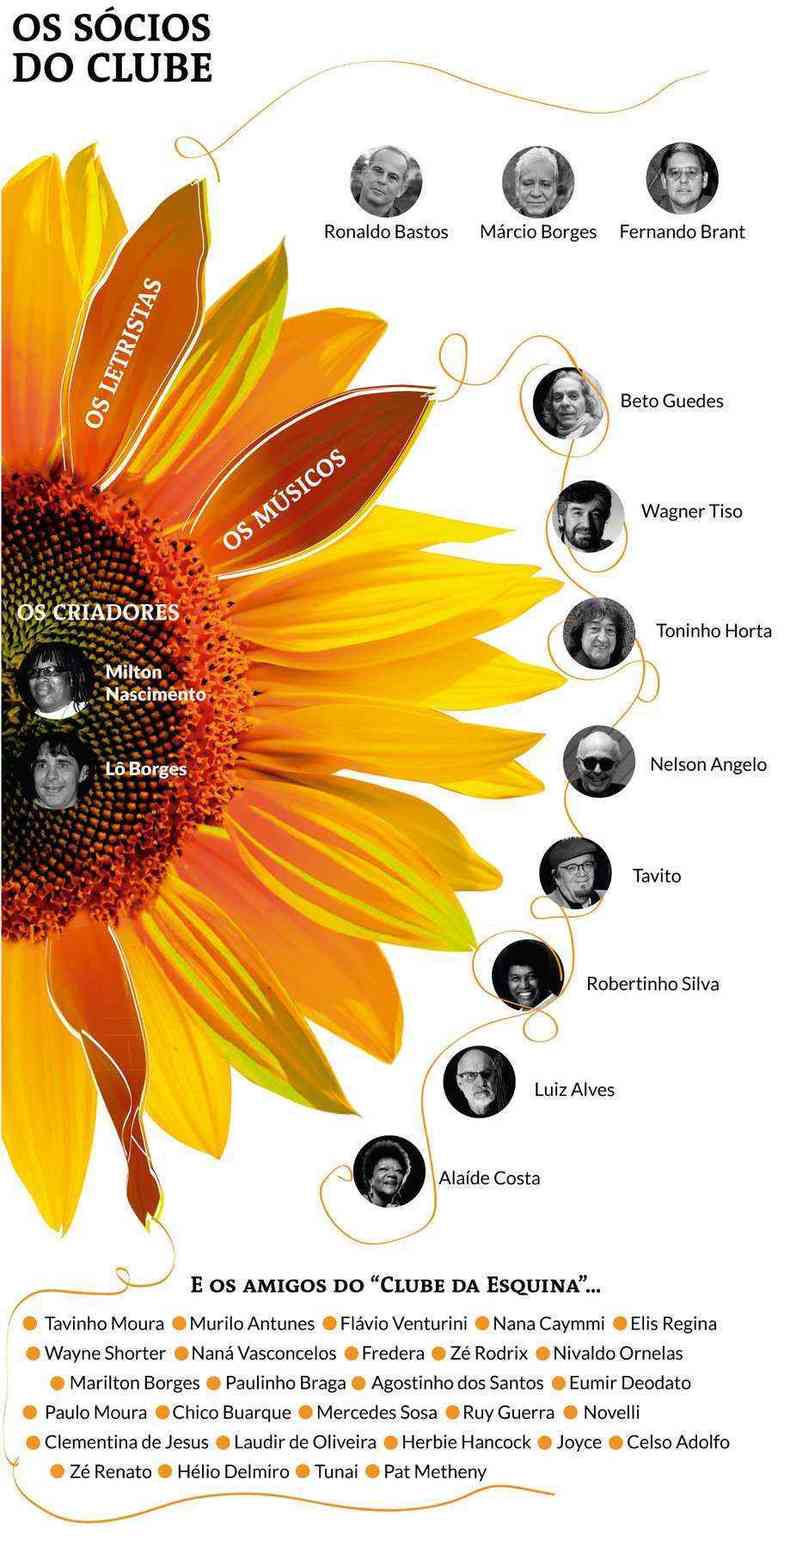 arte em forma de girassol mostra todos os integrantes e participantes do disco Clube da Esquina